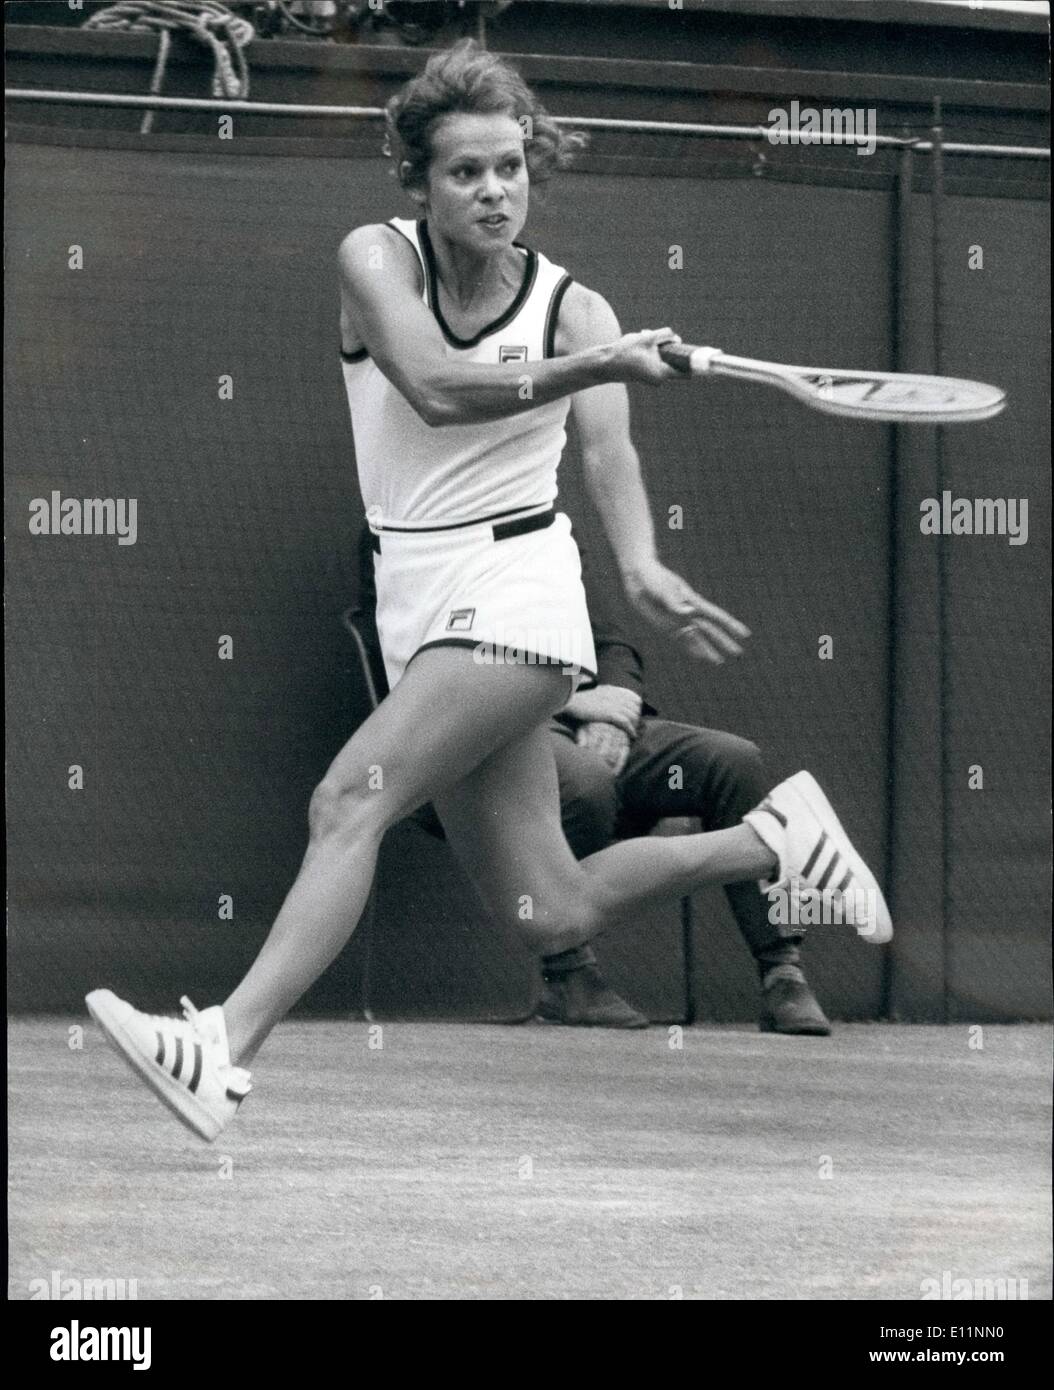 Lug. 07, 1979 - i battenti Aussie: onorevole Evonne Cawley ha avuto una partenza bruciante in tutti i giochi in questo anni campionati di Wimbledon. Ieri lei thashed Virginia Wade il Britannico No. 1 6-4 6-0. Lei gioca ora Chris Lloyd in semi-finale. Foto Stock